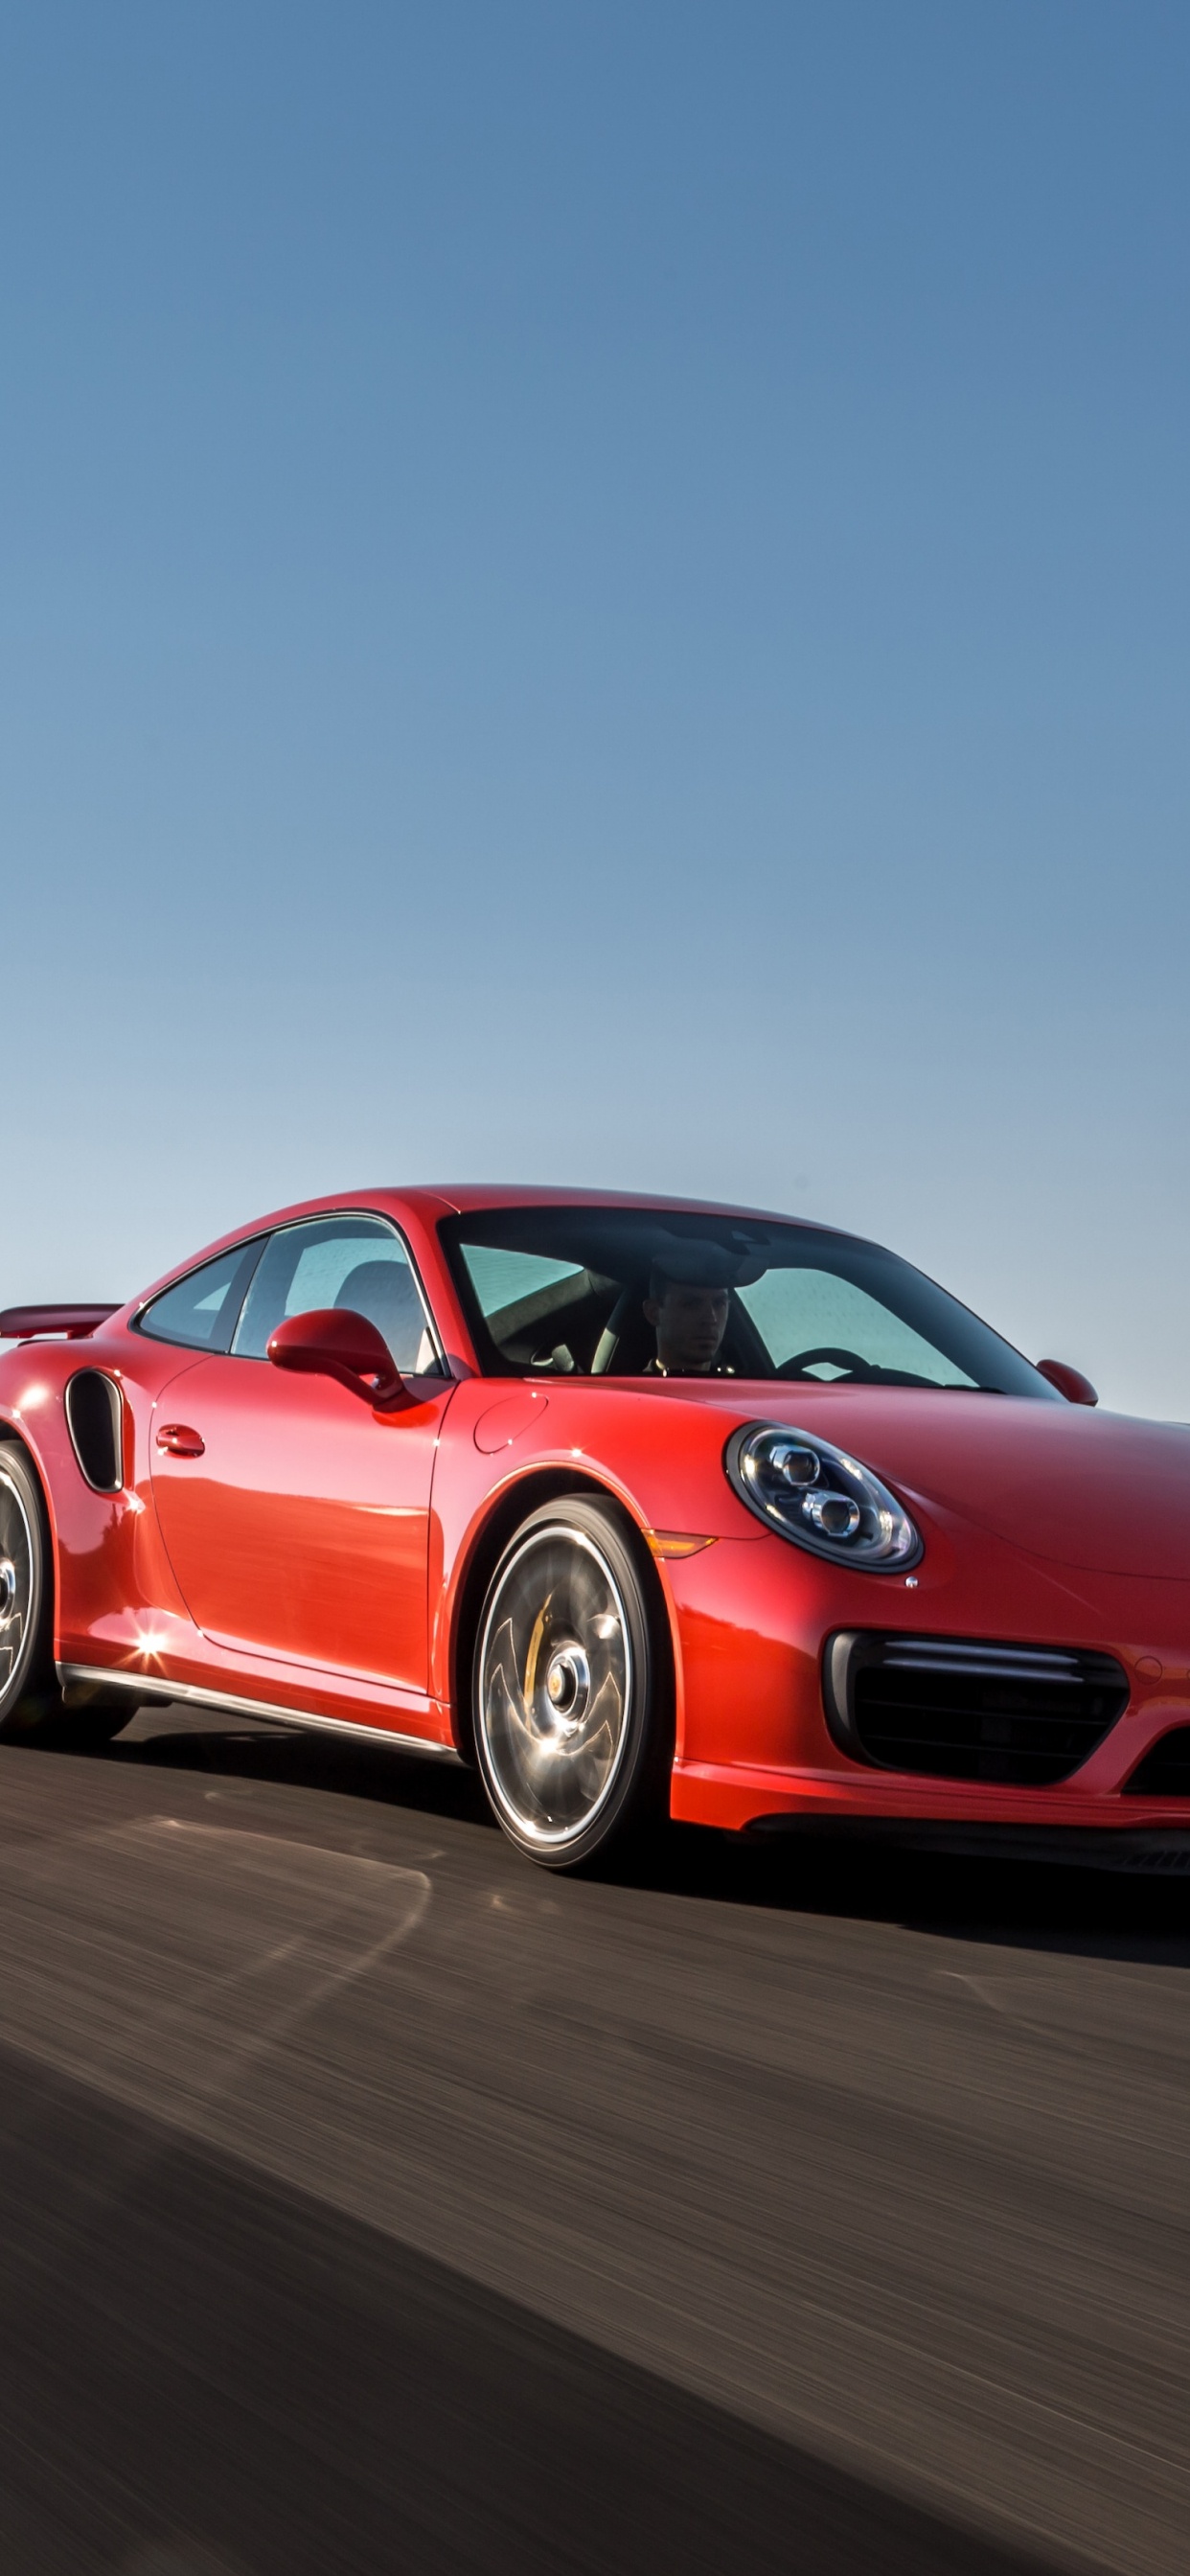 Roter Porsche 911 Tagsüber Unterwegs. Wallpaper in 1242x2688 Resolution